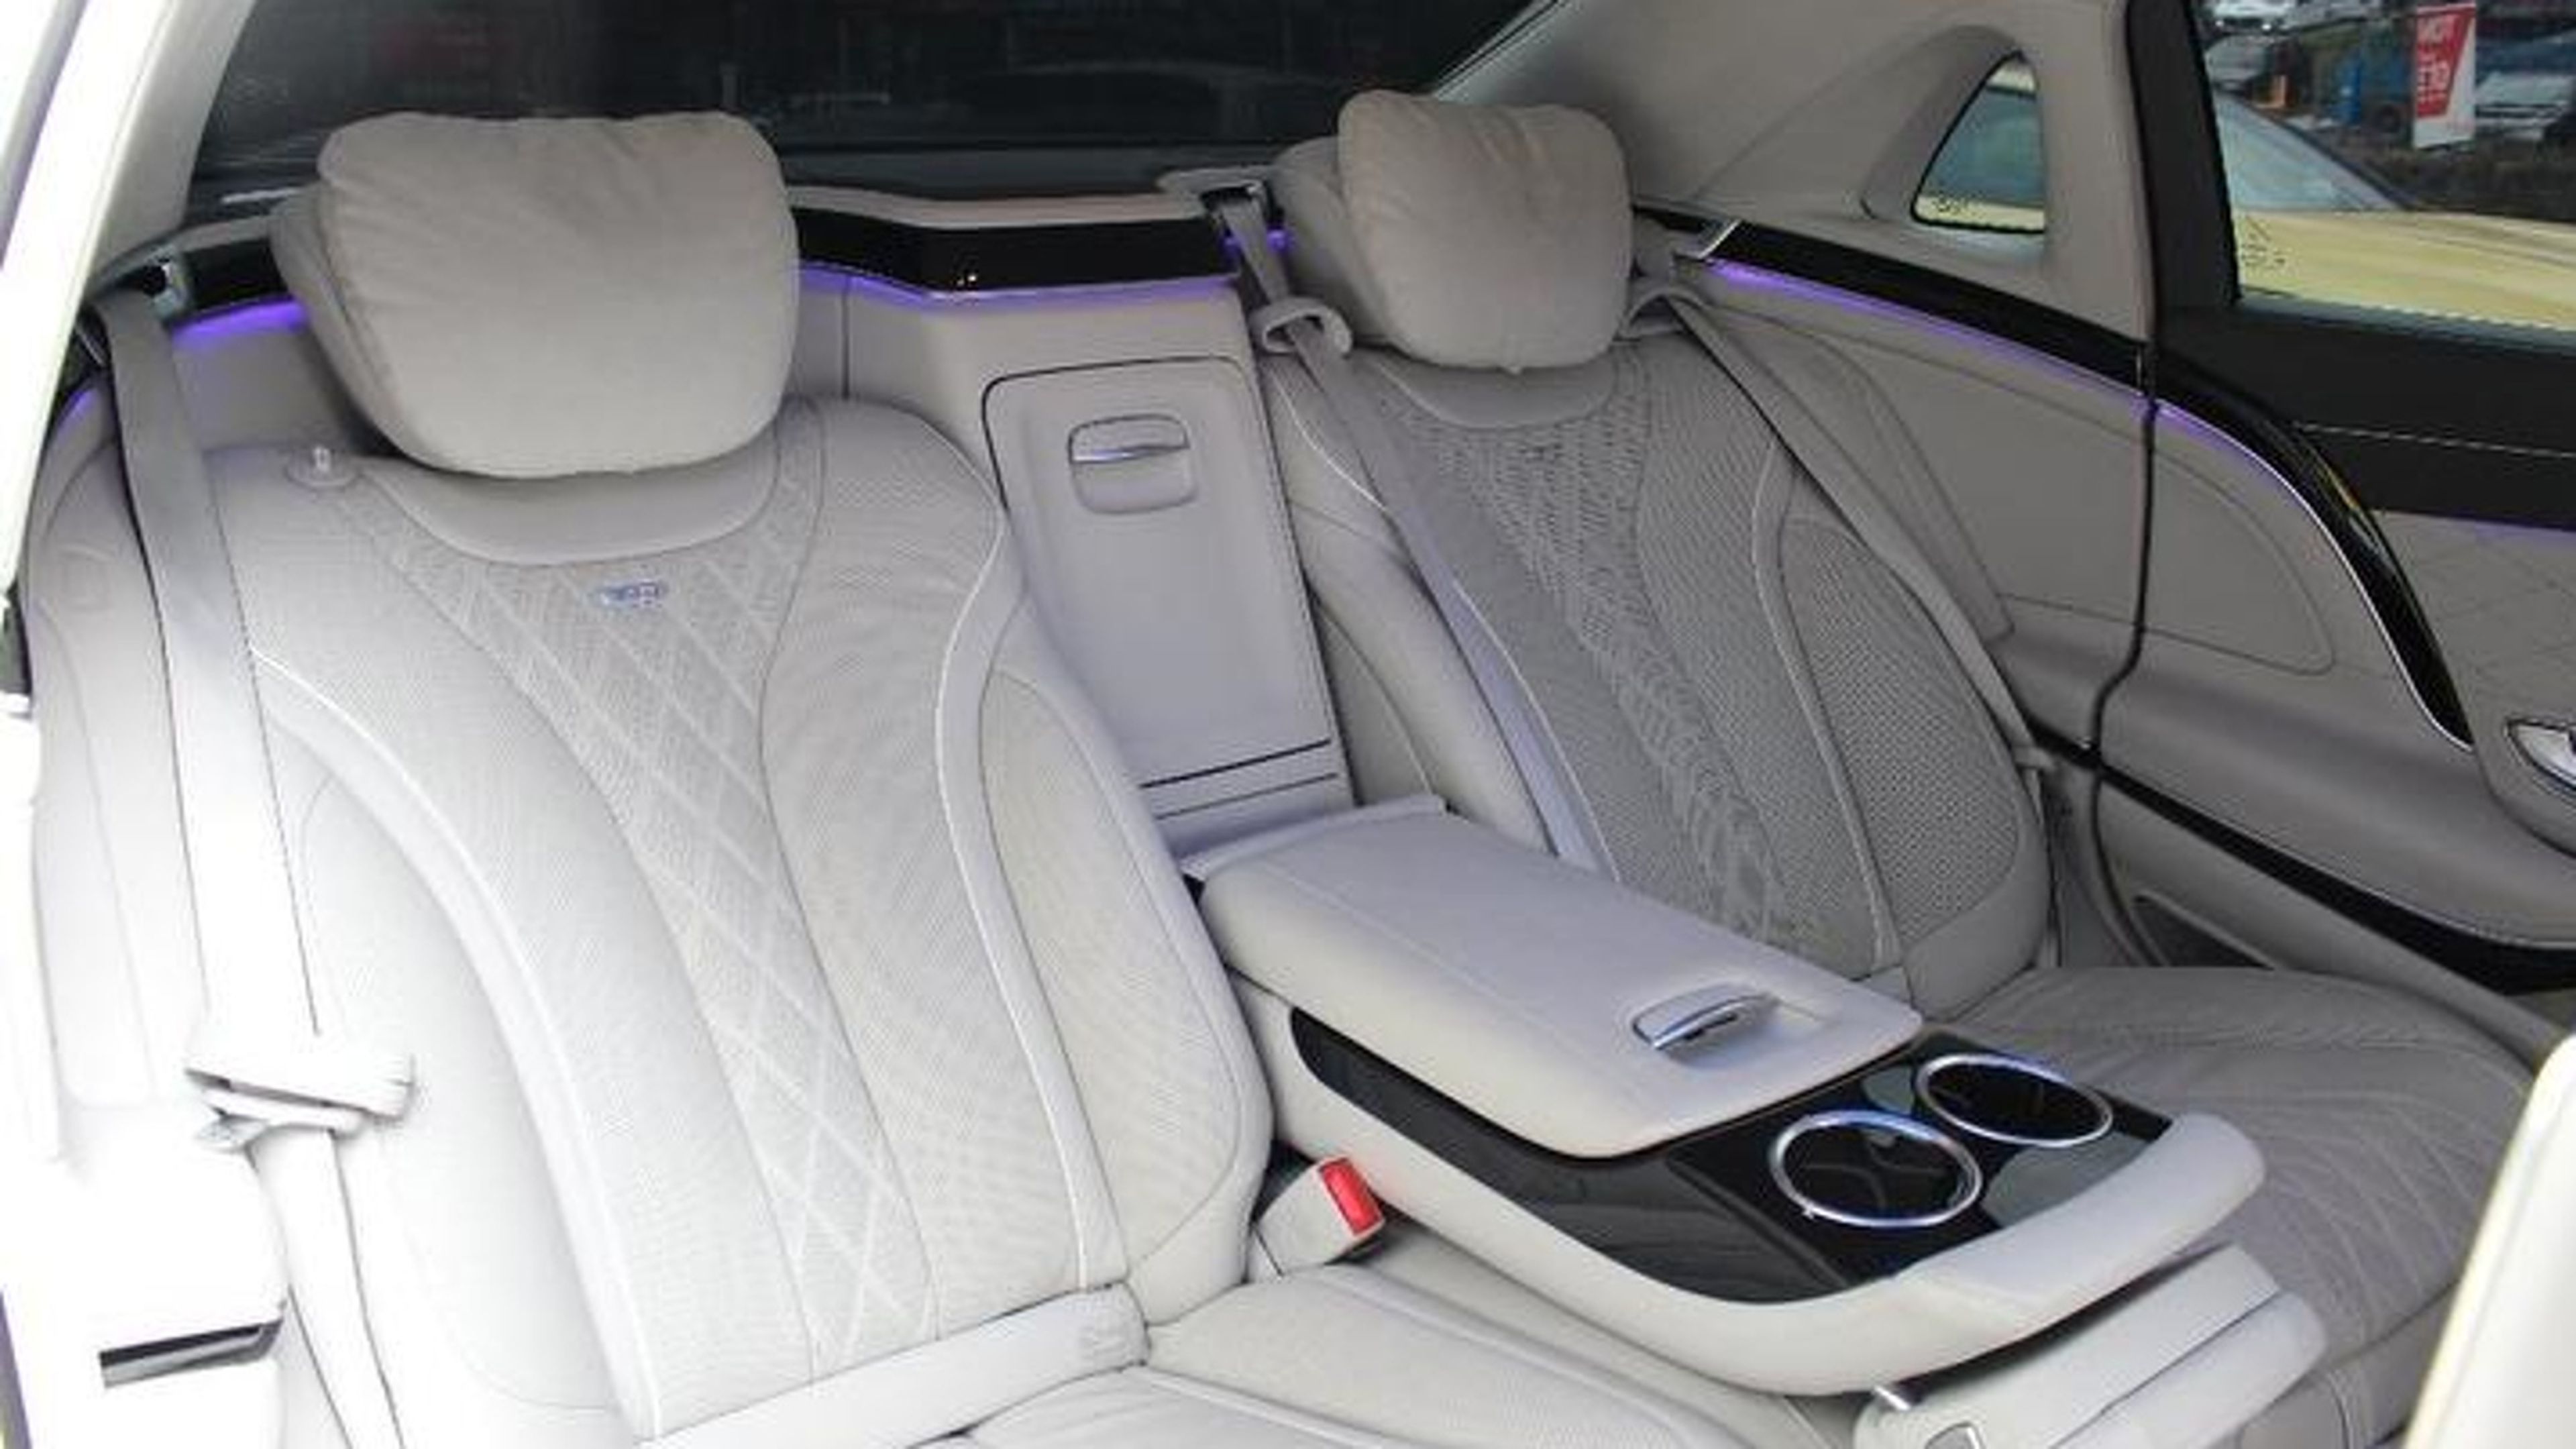 Interior muuu molón del Mercedes Maybach S600 de Hamiton